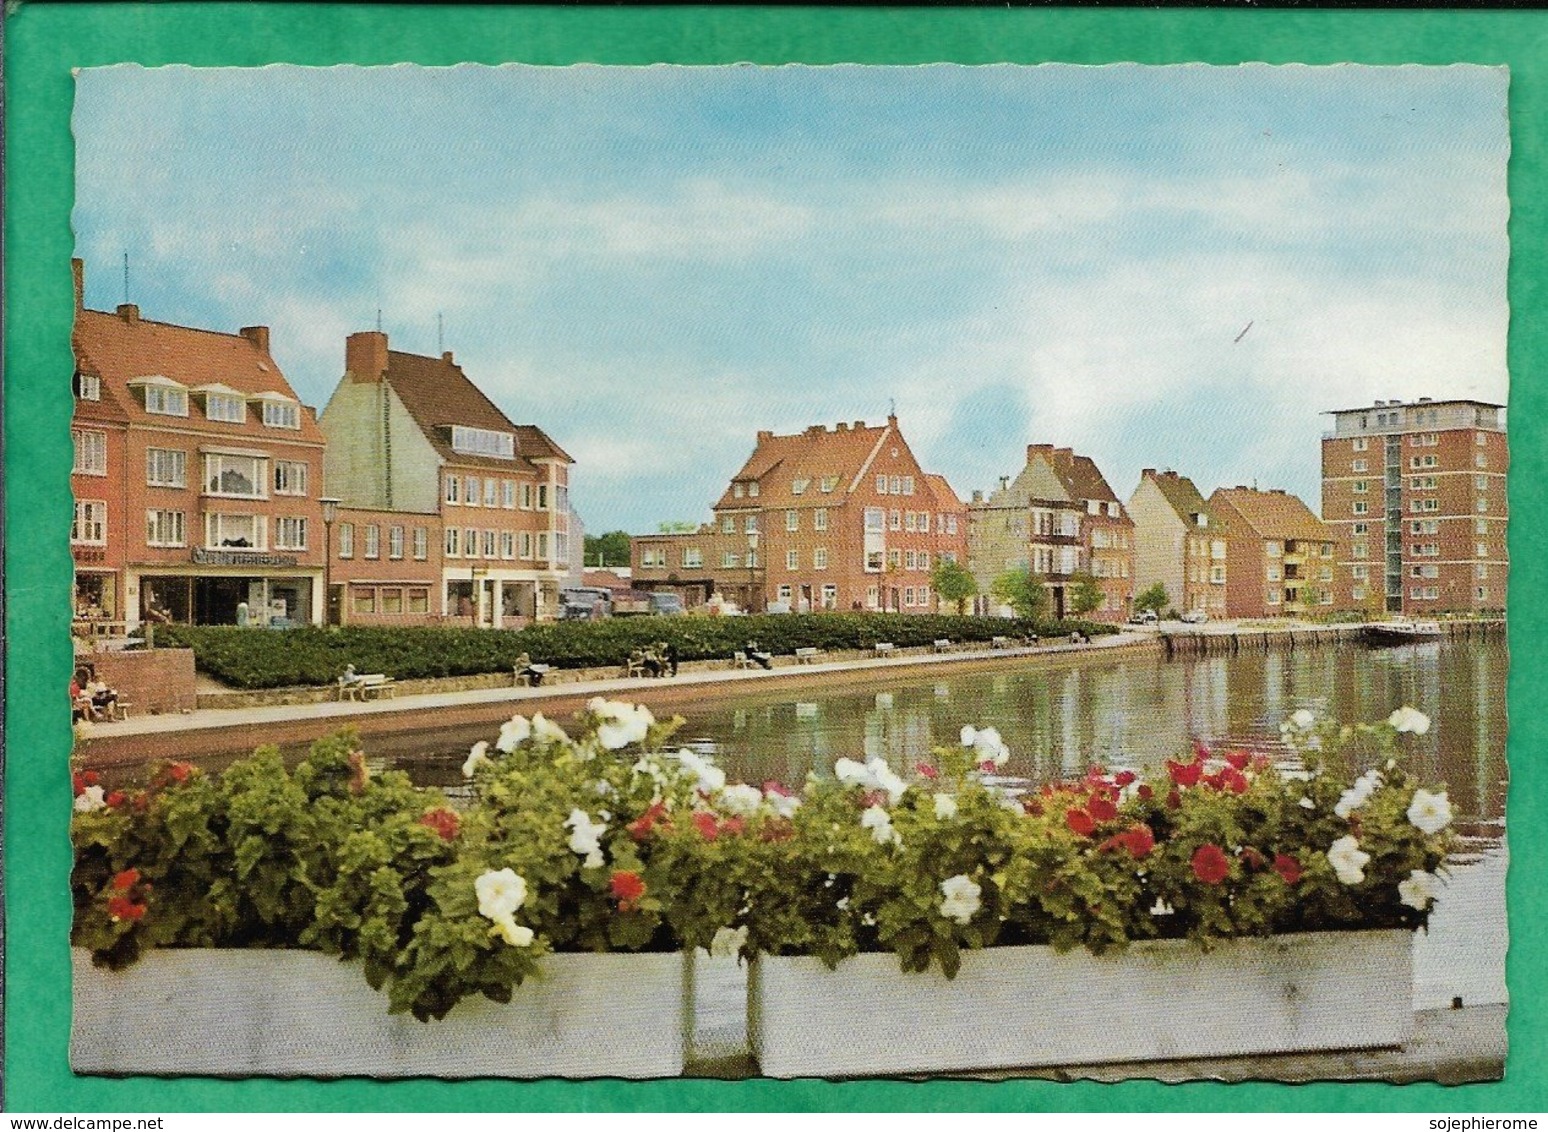 Emden Am Delft 2scans (geschrieben Briefmark) - Emden